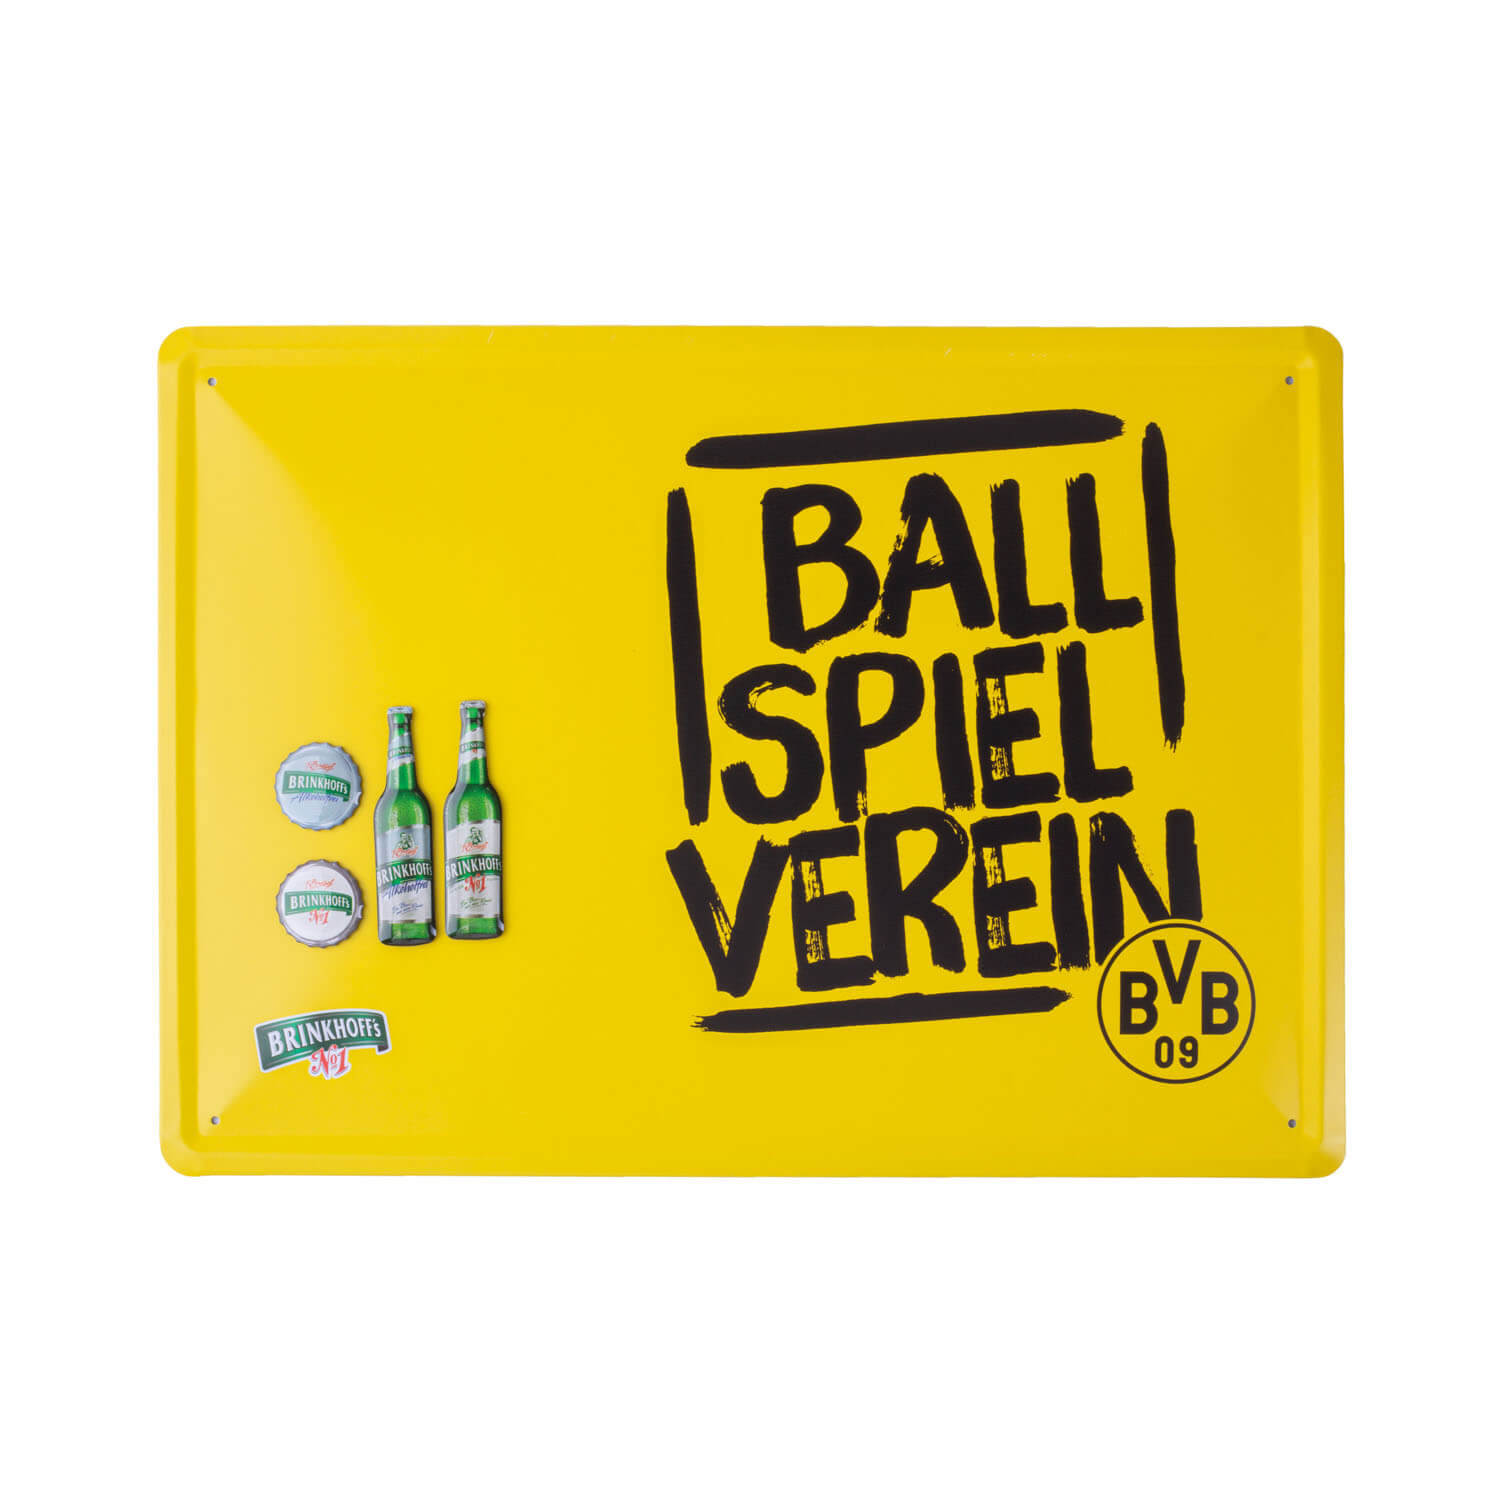 Brinkhoff's BVB Pinnwand "Ballspielverein"